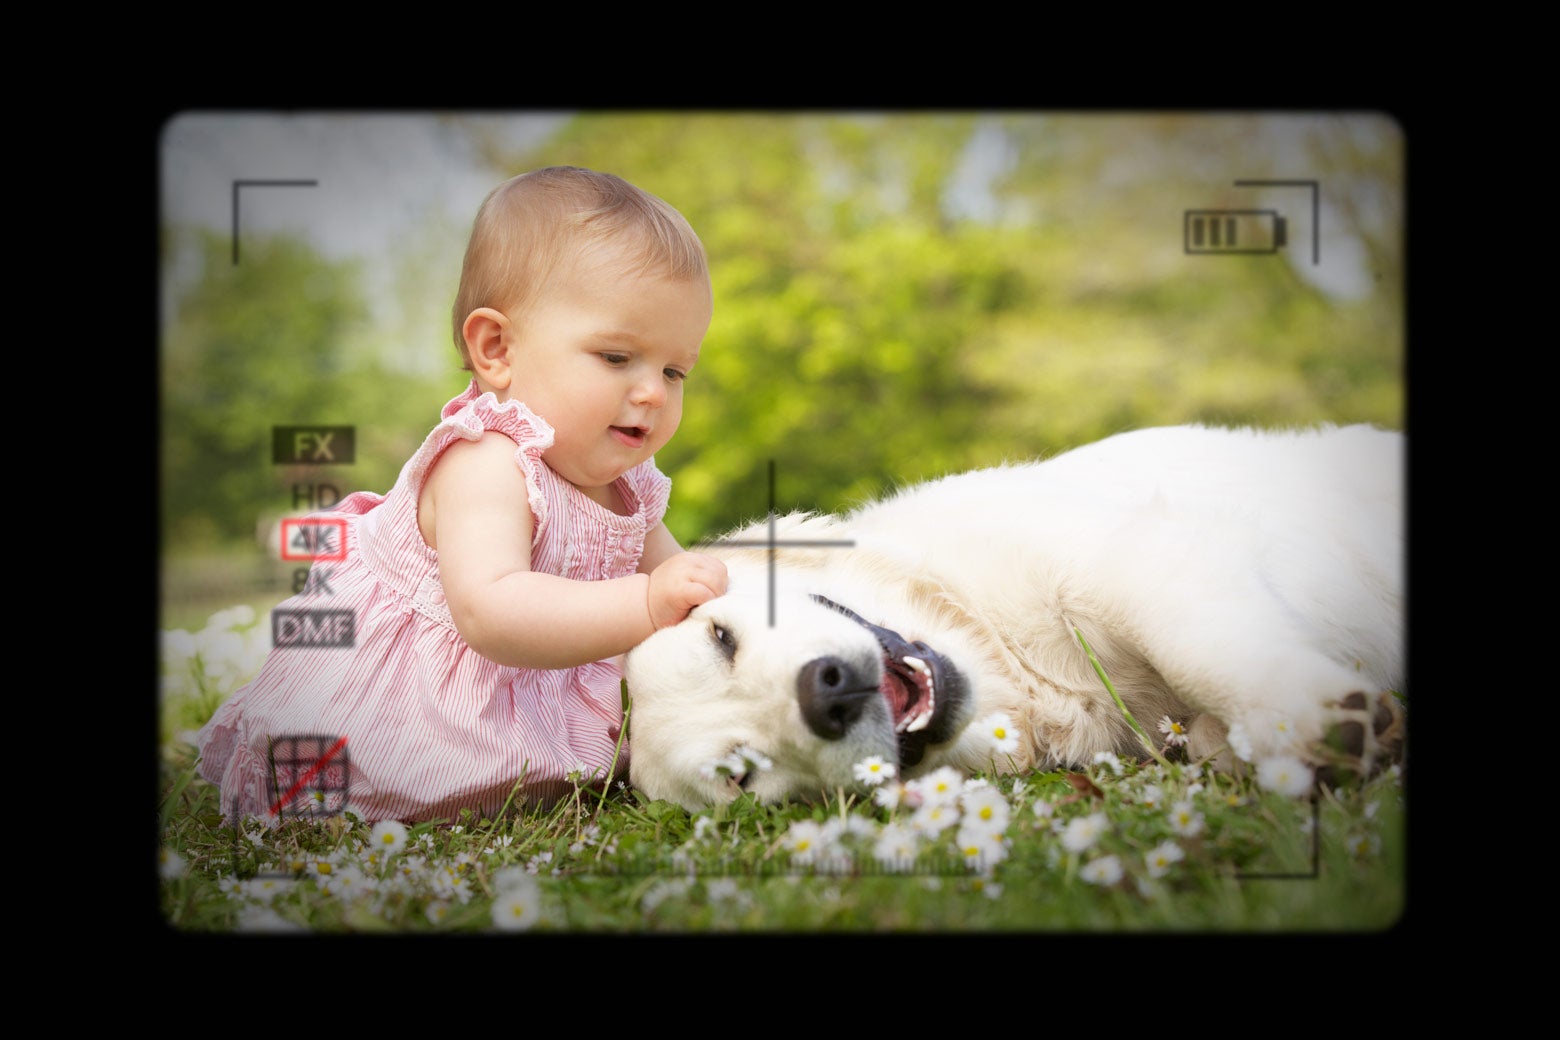 A baby with a dog, seen through a camera lens. 